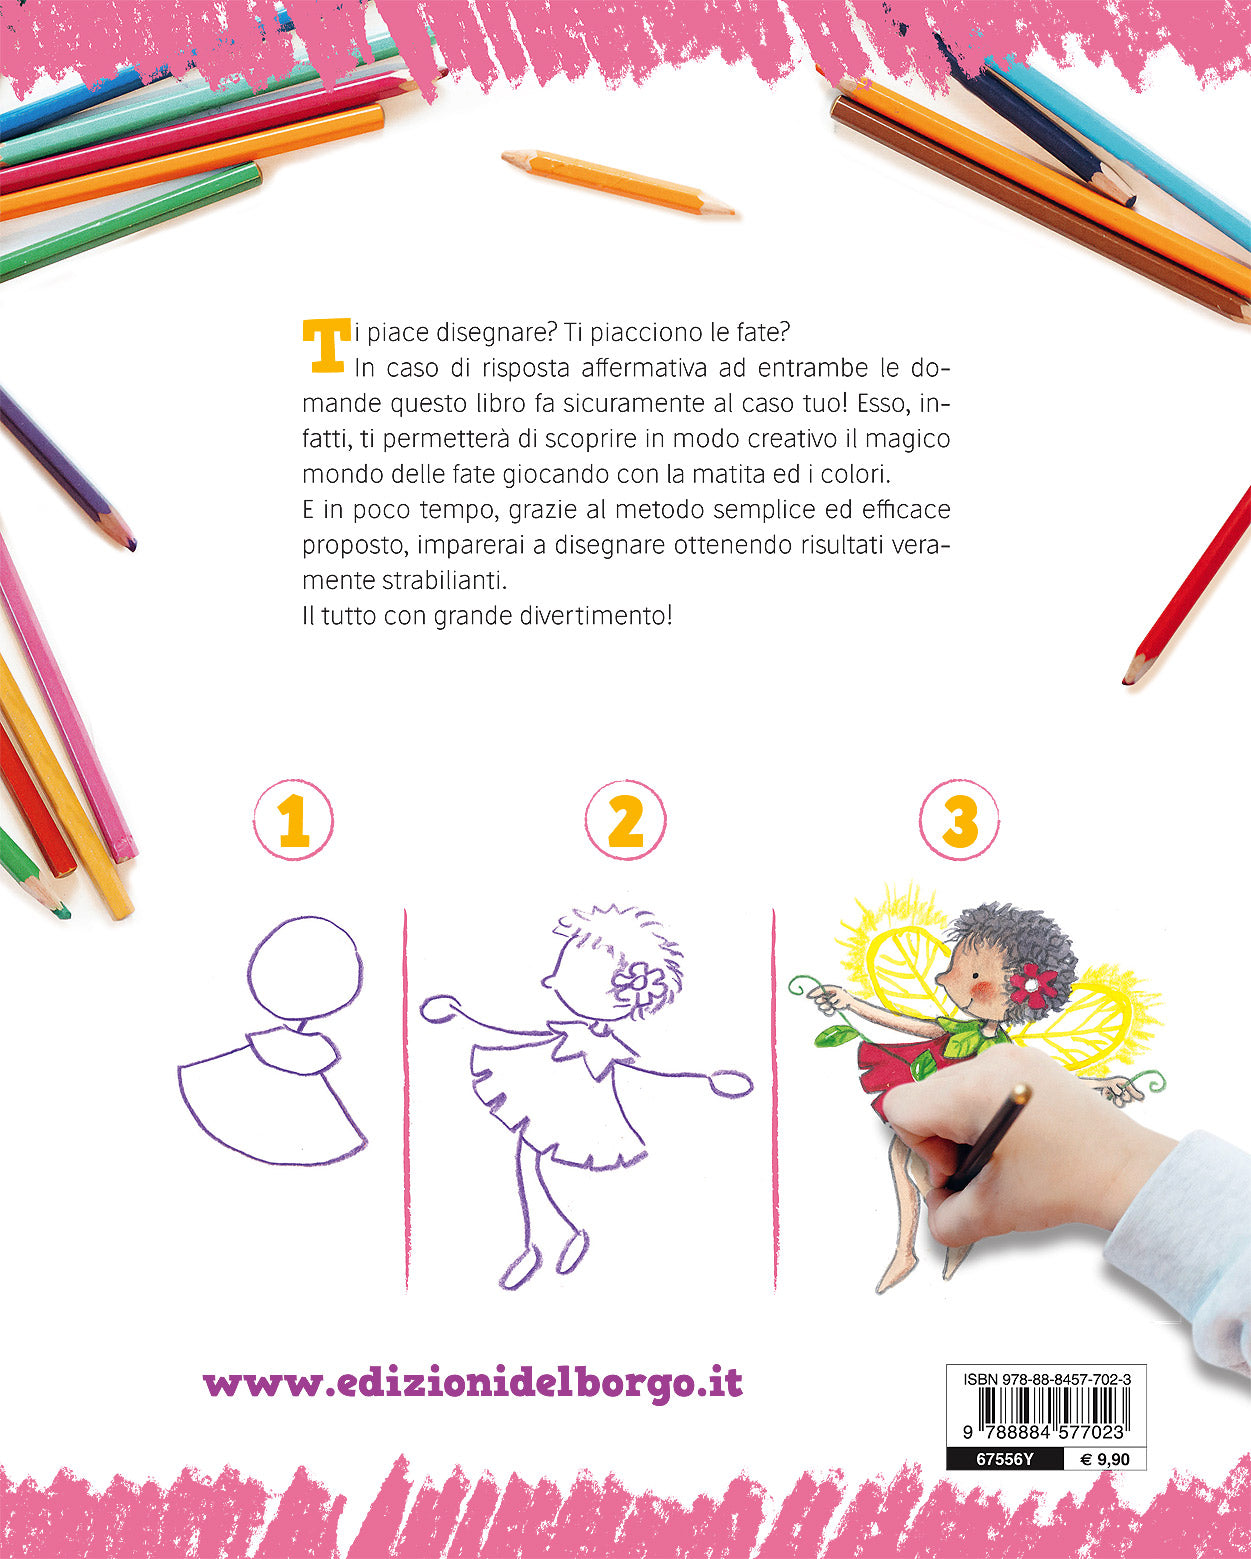 Imparare a disegnare. Corso per bambini - Vol. 4. Il mondo delle fate - Un manuale con tanti esempi per imparare a disegnare passo dopo passo